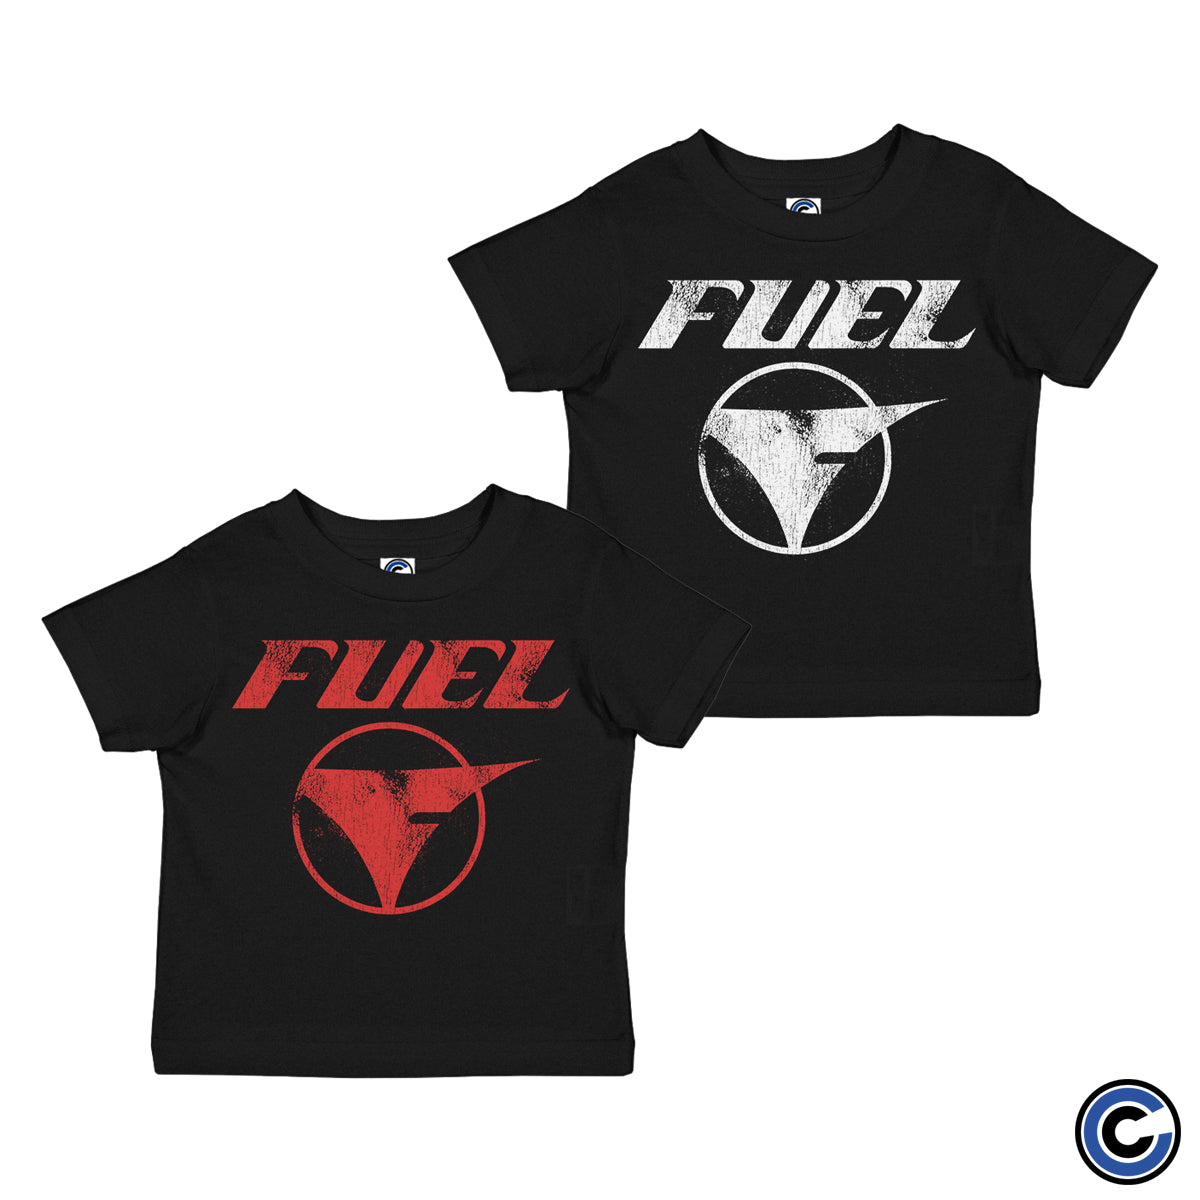 Fuel "Vintage" Toddler Shirt